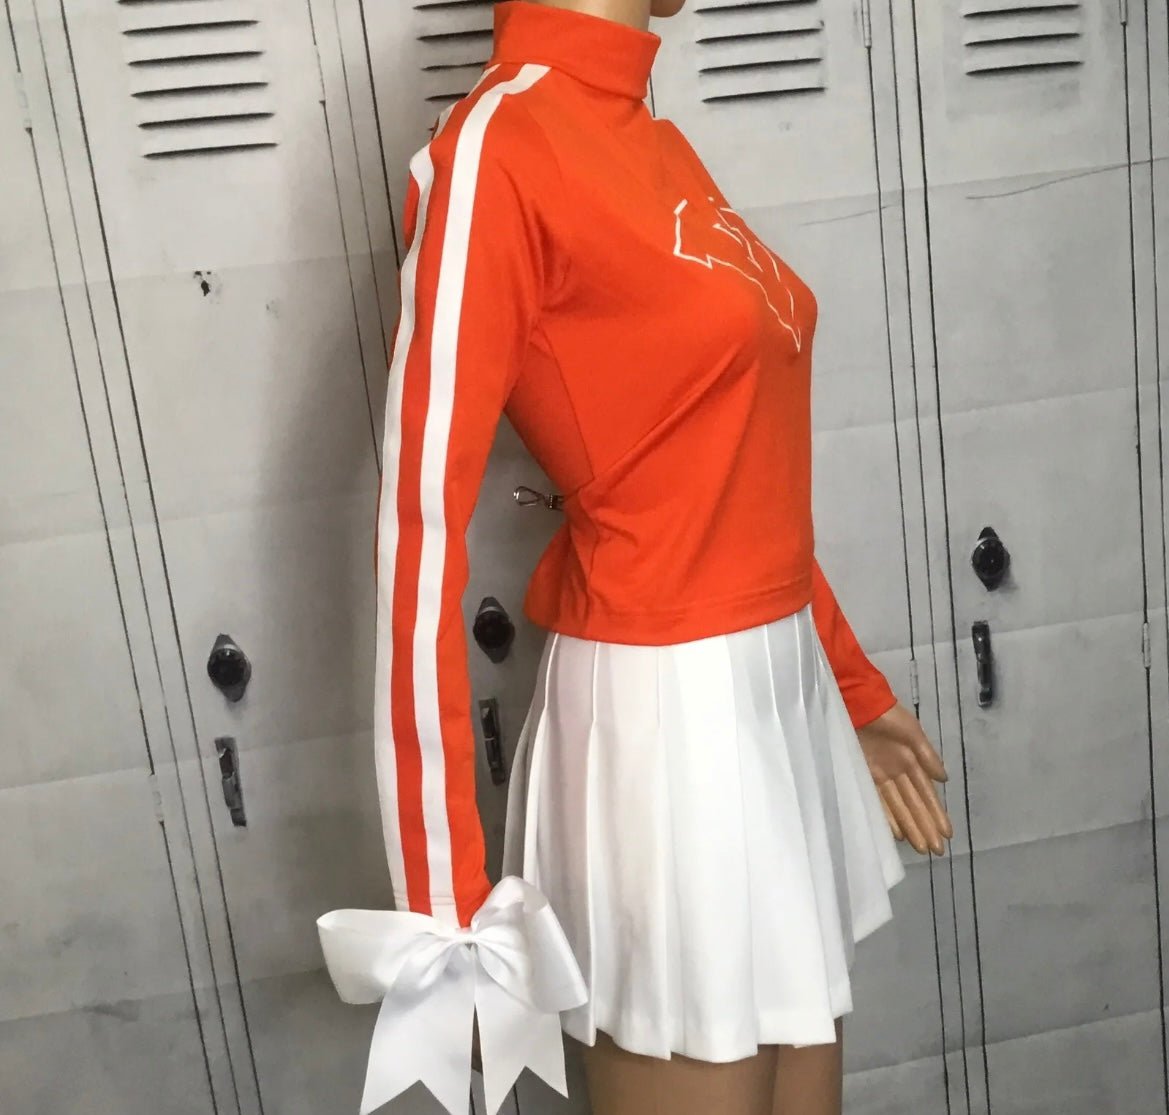 Tennessee Vols vintage cheerleading uniform